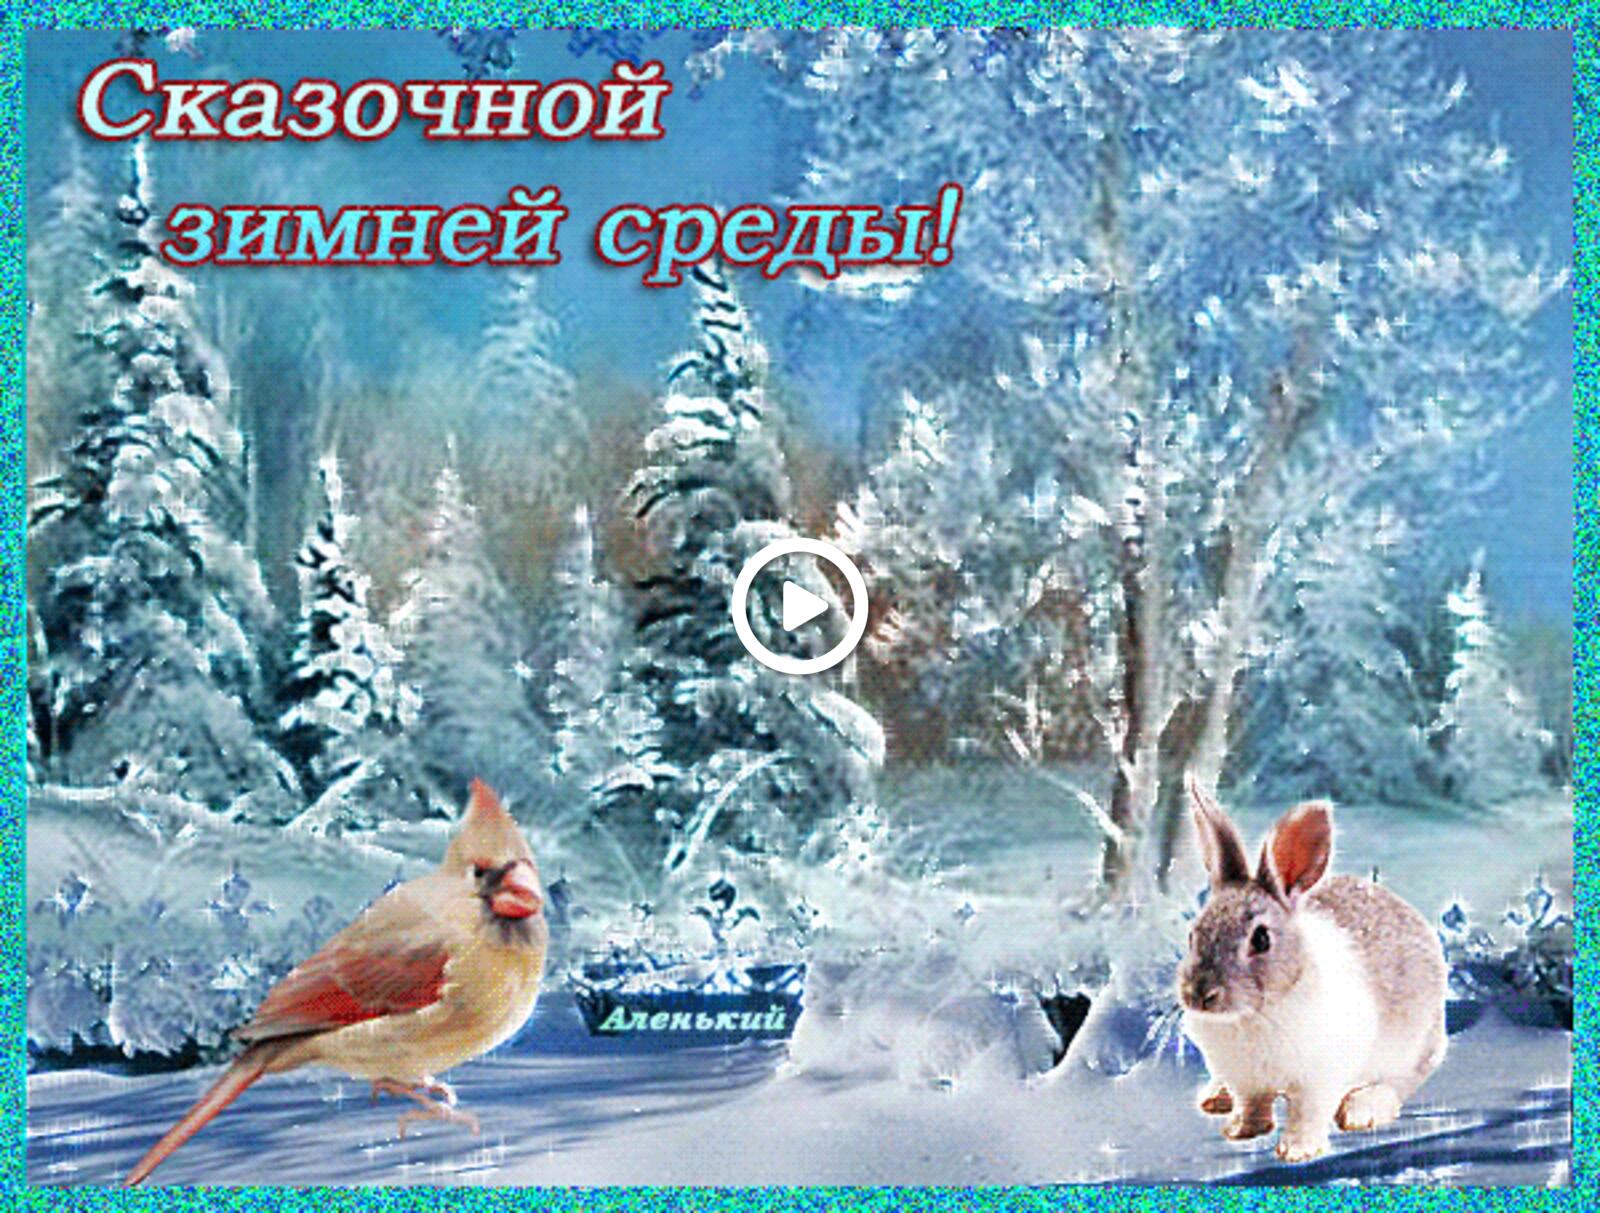 一张以鸟儿 雪 兔子为主题的明信片